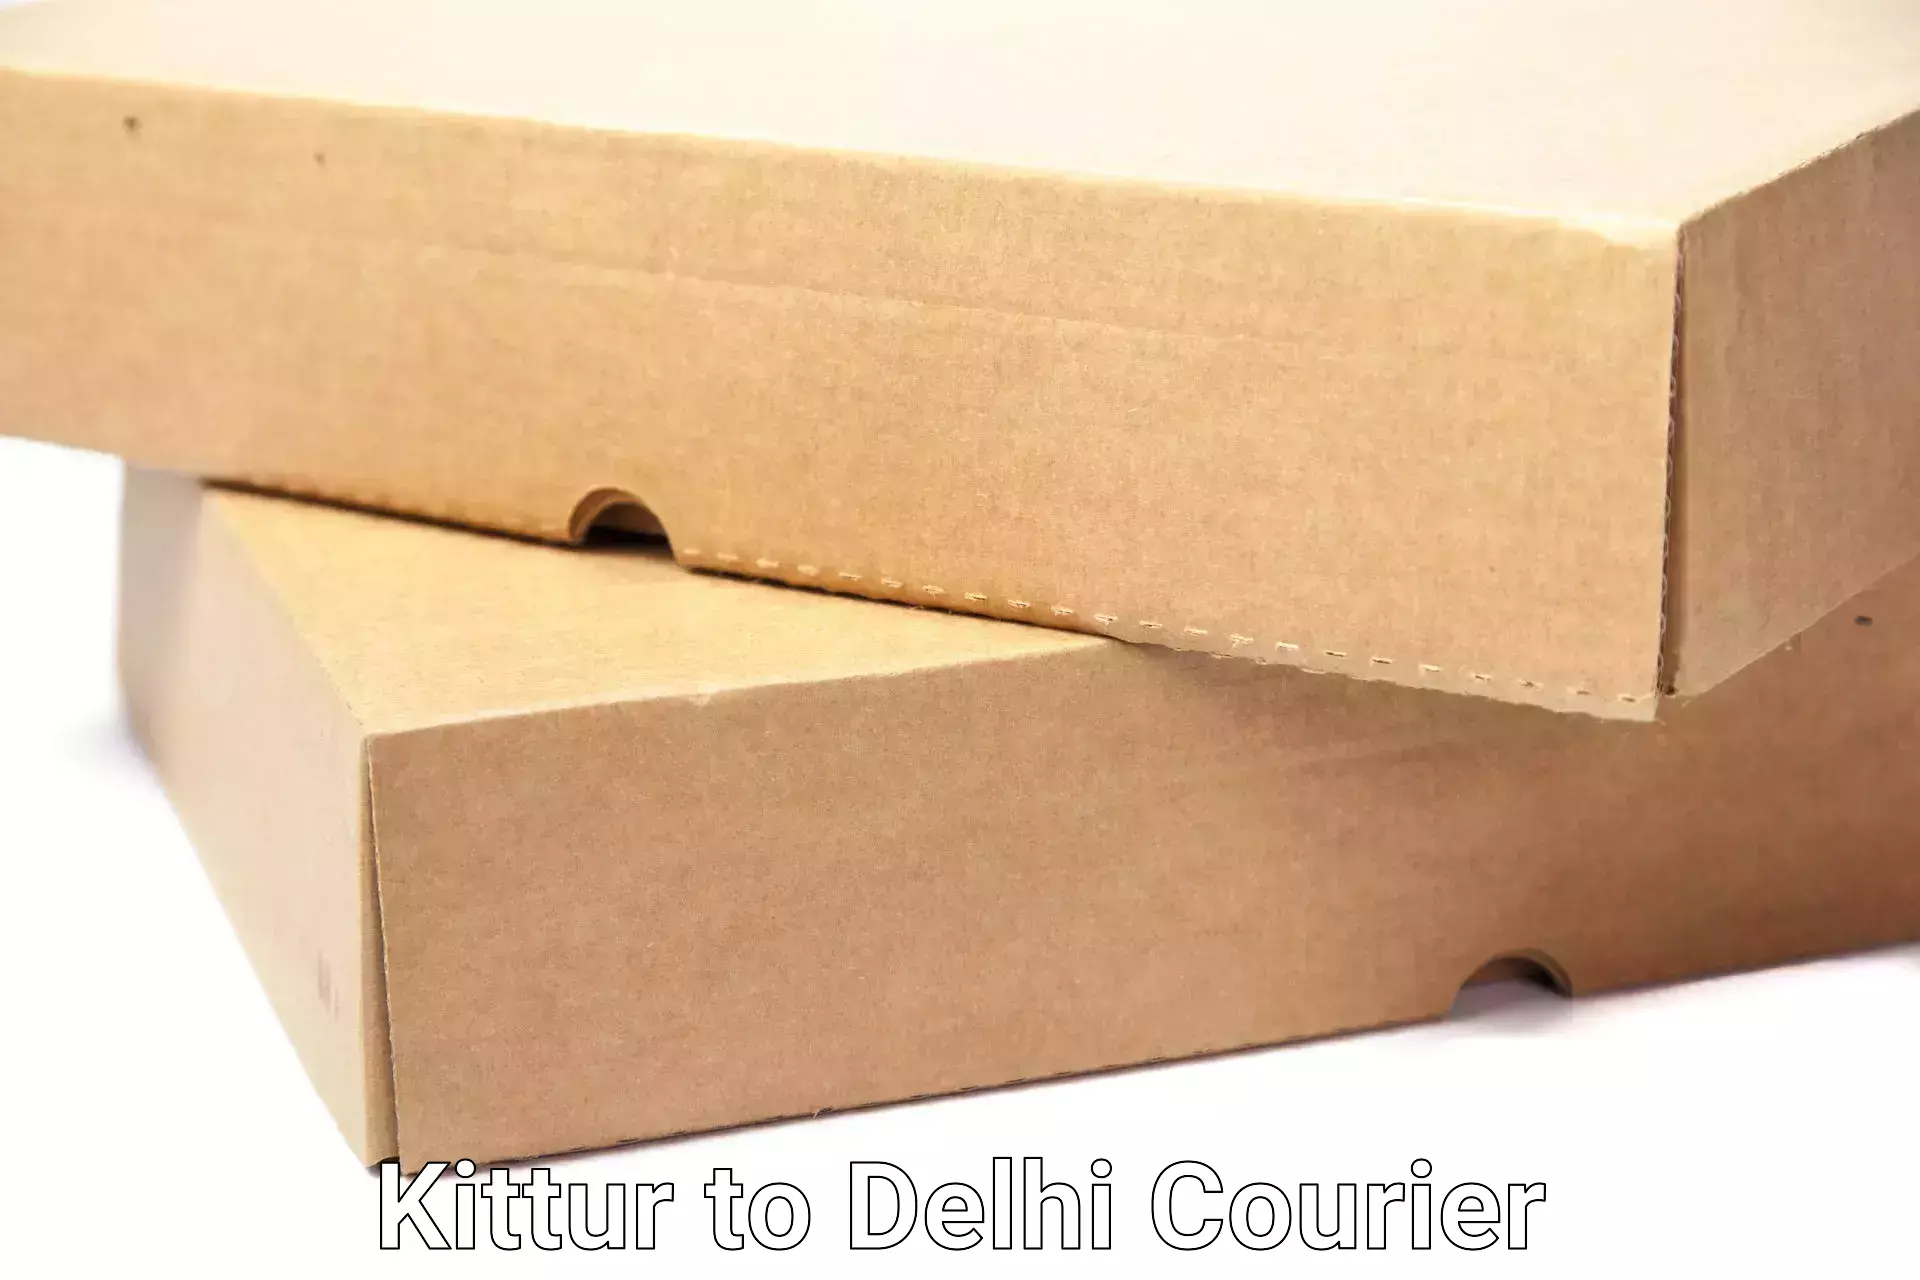 Household goods transporters Kittur to Delhi